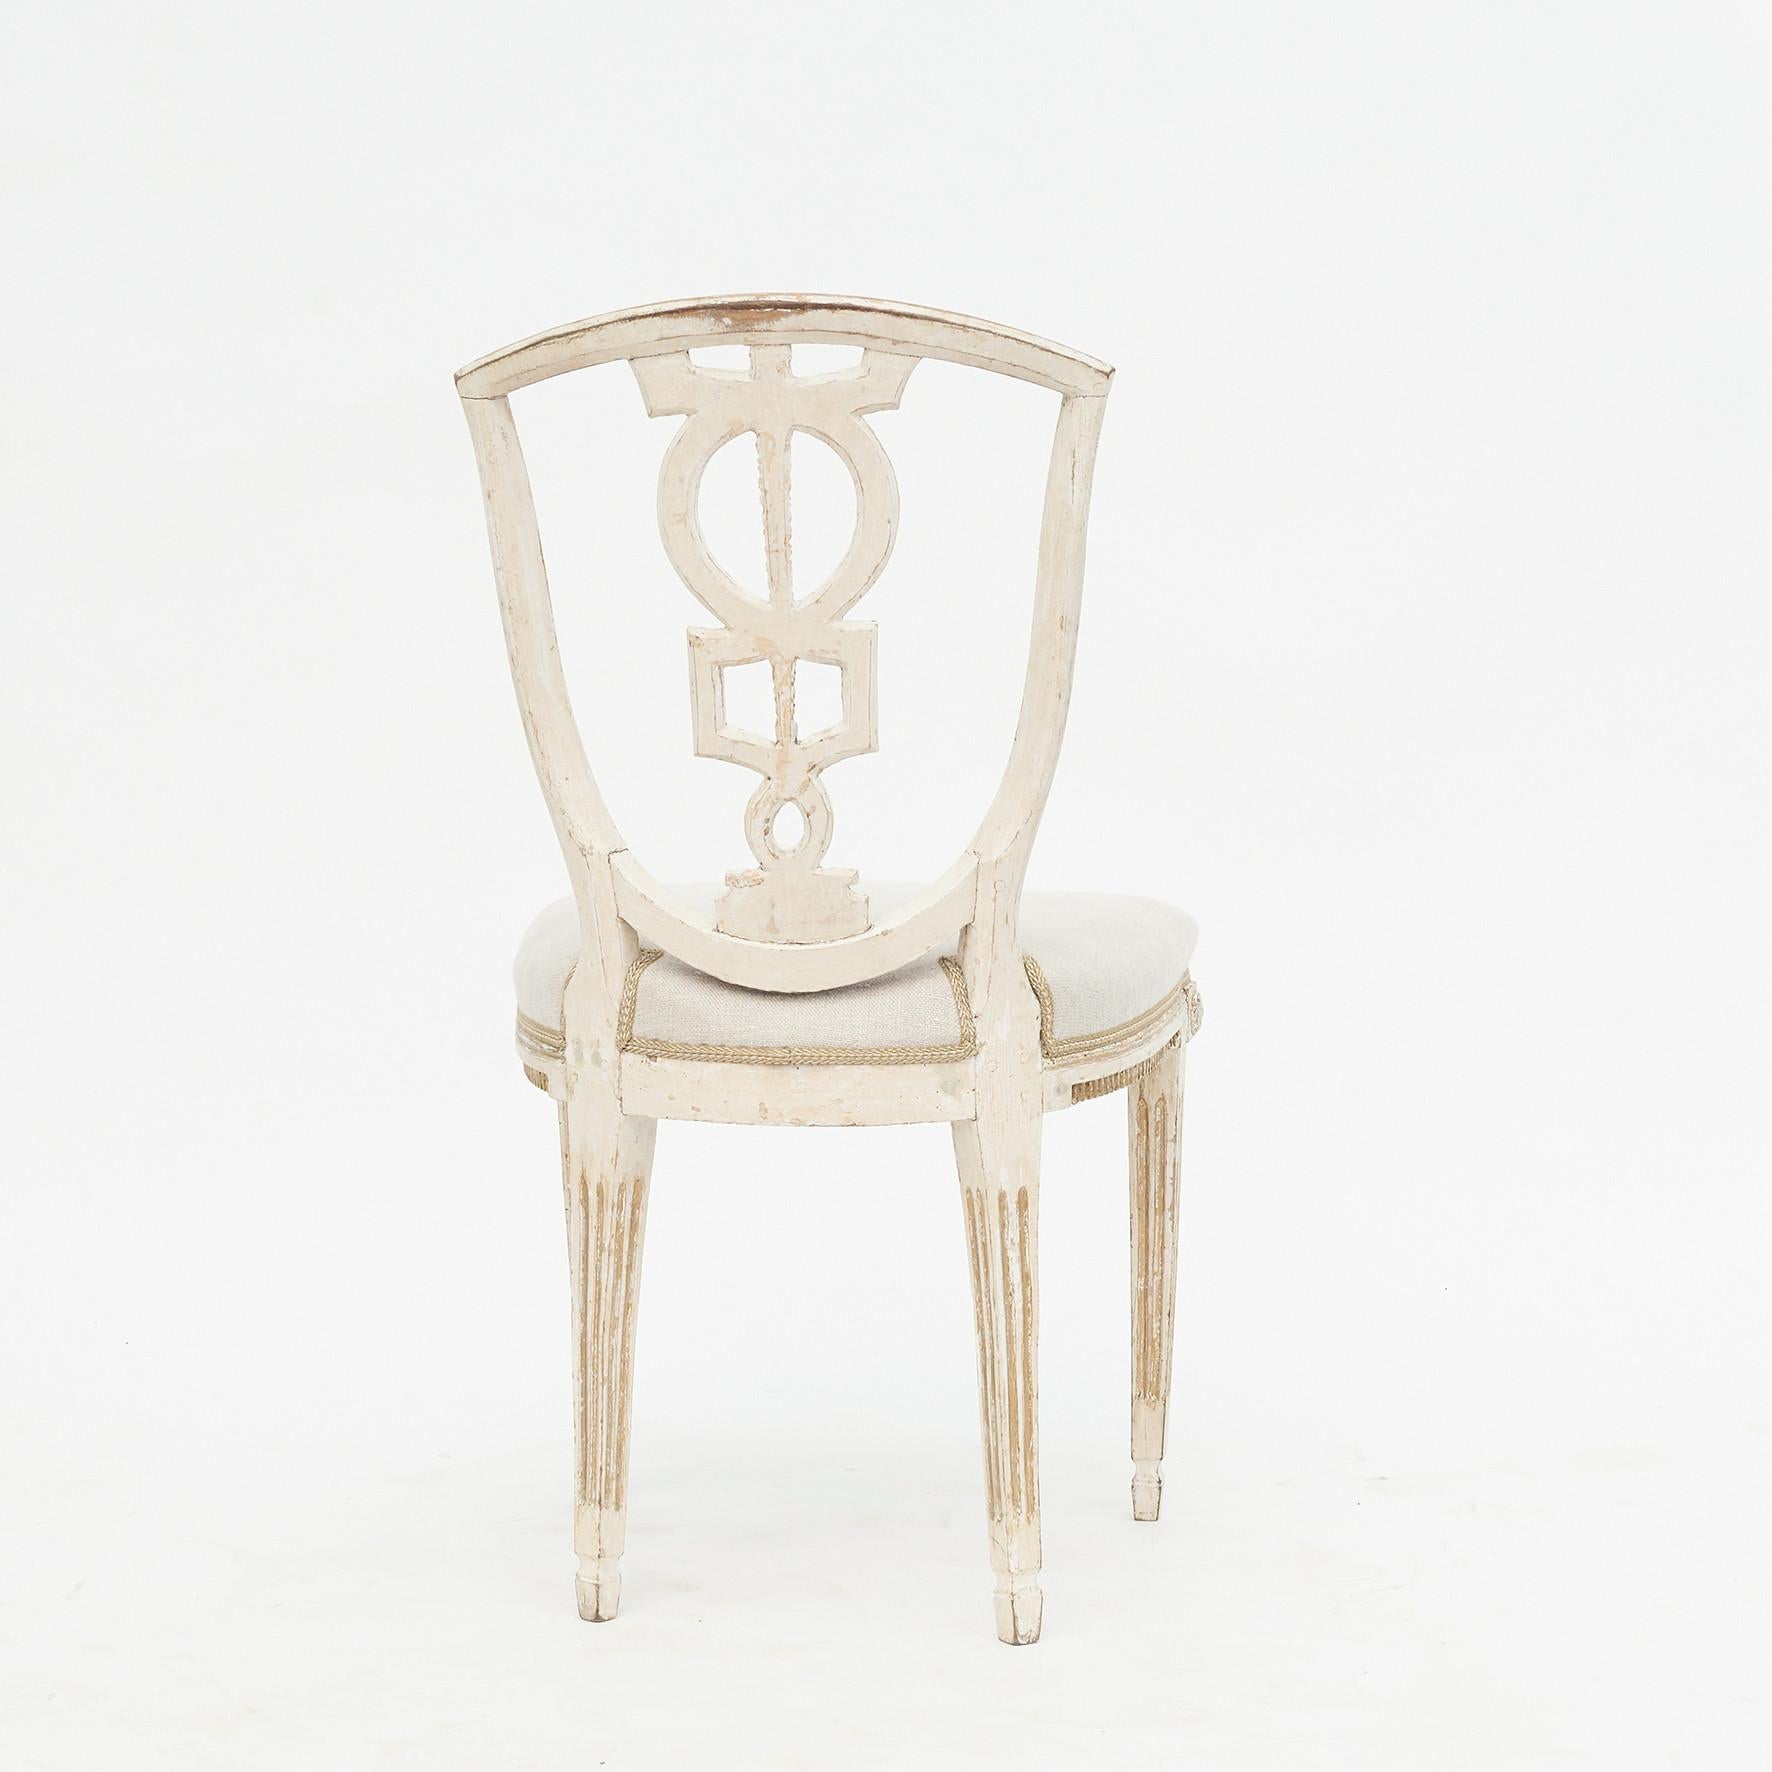 Paire d'élégantes chaises Louis XVI, 1780-1800. Original blanc, douce or.
Dossier de chaise avec découpes géométriques et pieds fuselés avec sculptures.
Sièges recouverts de lin.
Bonne patine naturelle.
Vendu par paire.